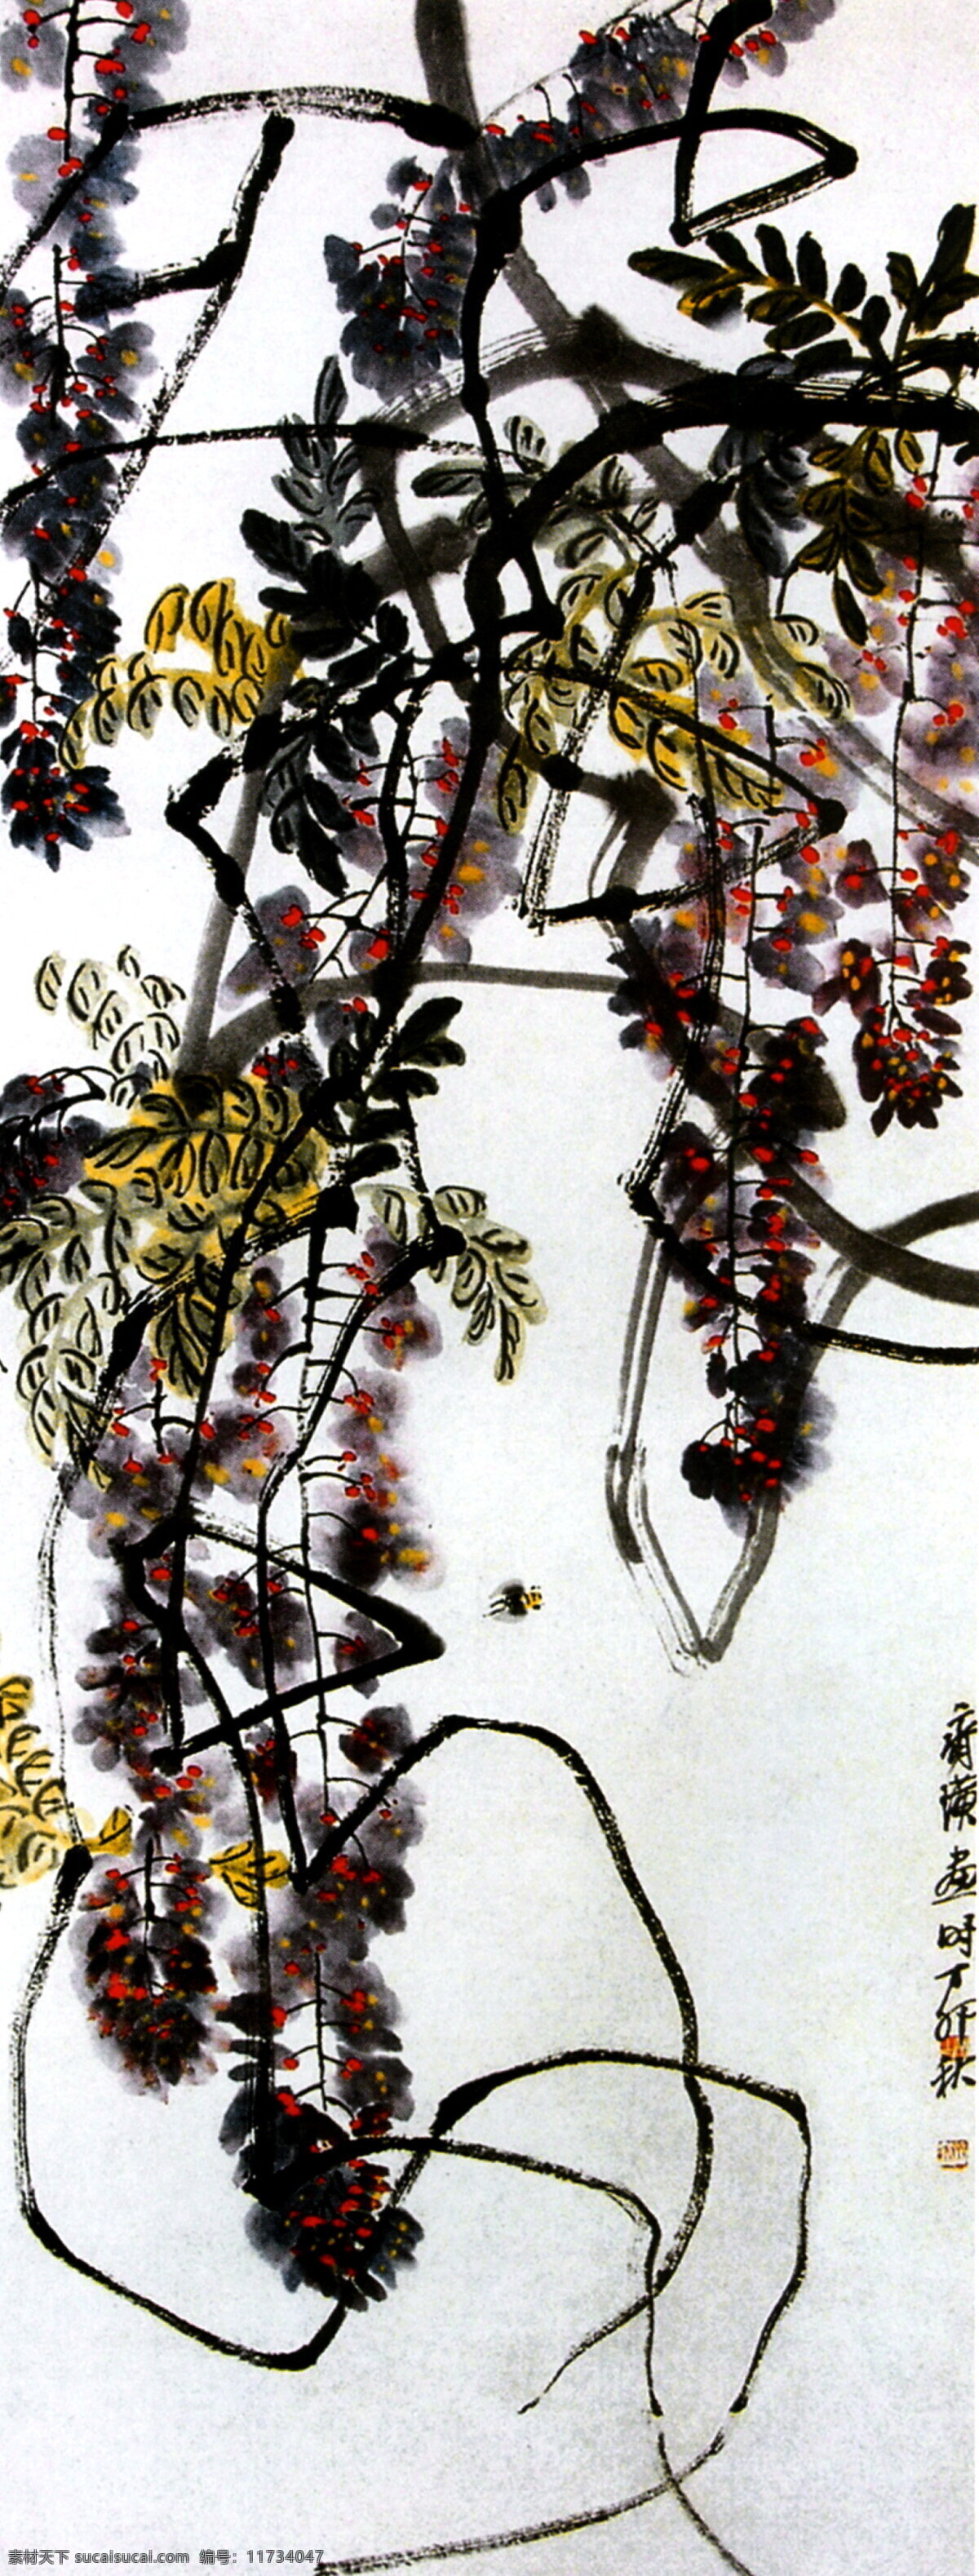 齐白石名画 古画 蜜蜂藤萝 中国画 设计素材 昆虫画篇 中国画篇 书画美术 白色